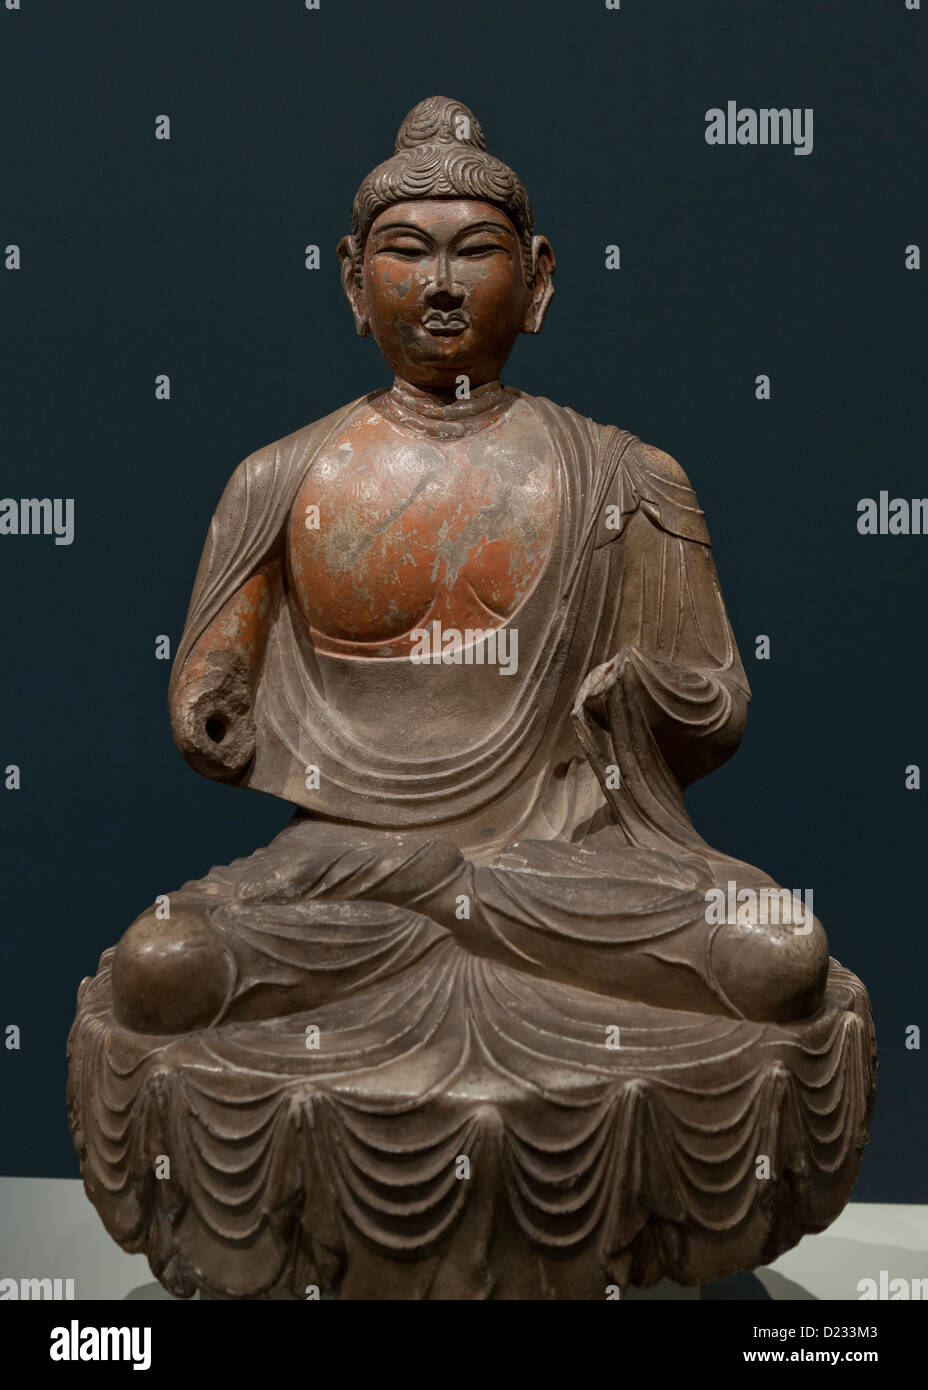 Escultura de Buda, dinastía Tang, en China, del siglo VIII. Foto de stock